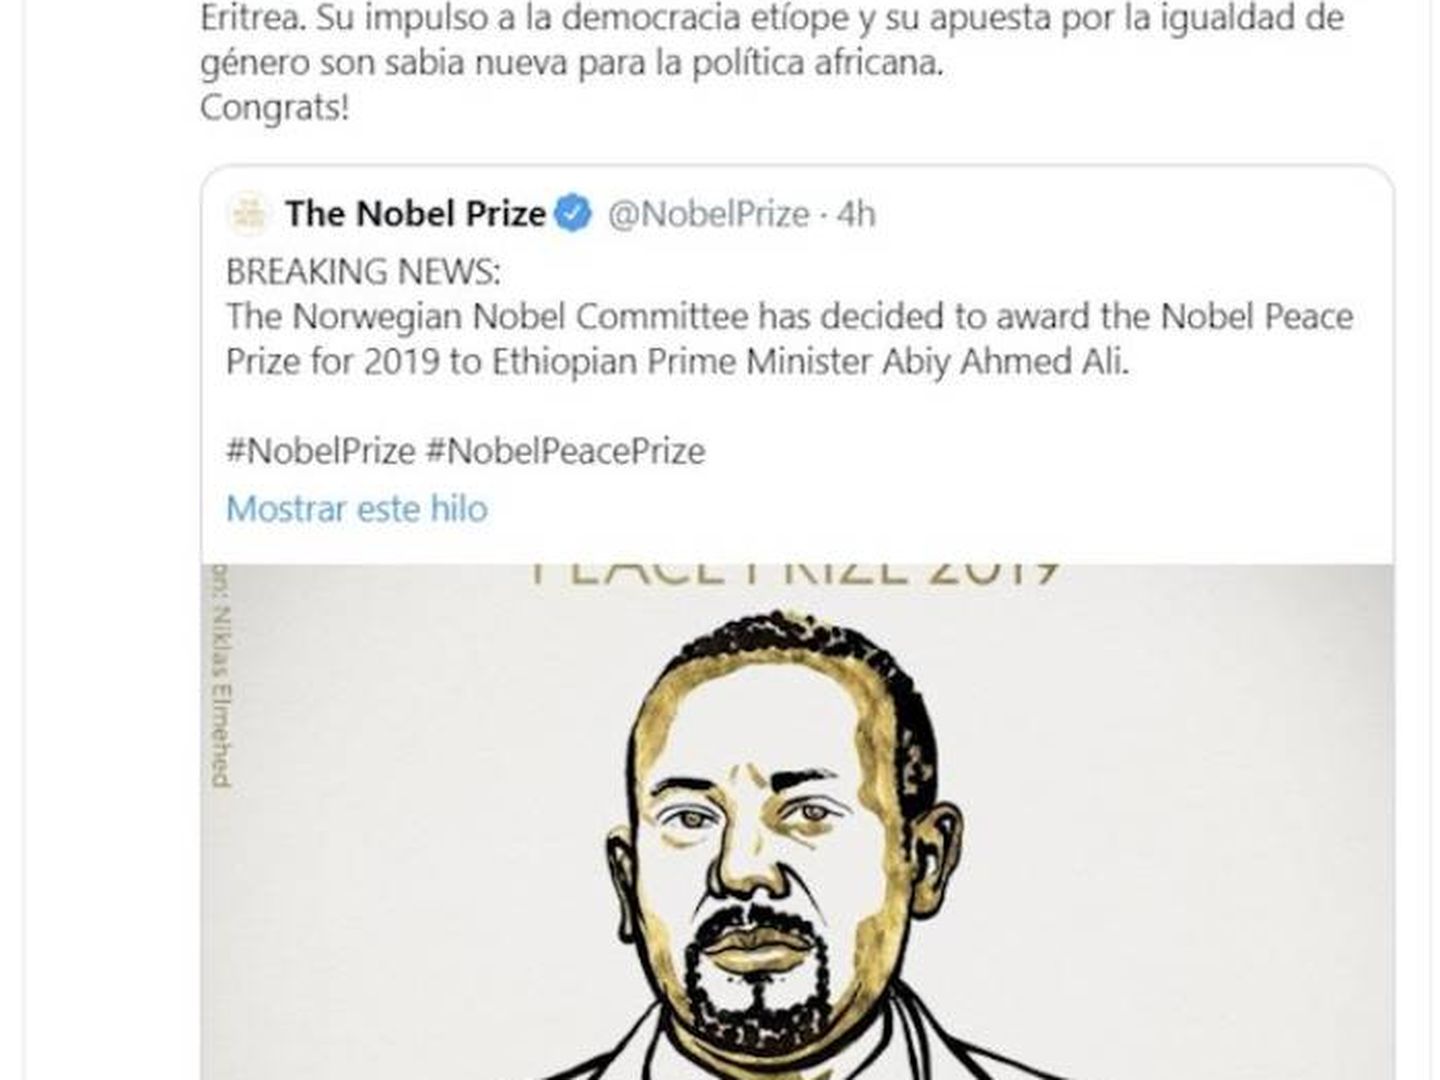 Mensaje en Twitter de Pedro Sánchez felicitando al primer ministro etíope.